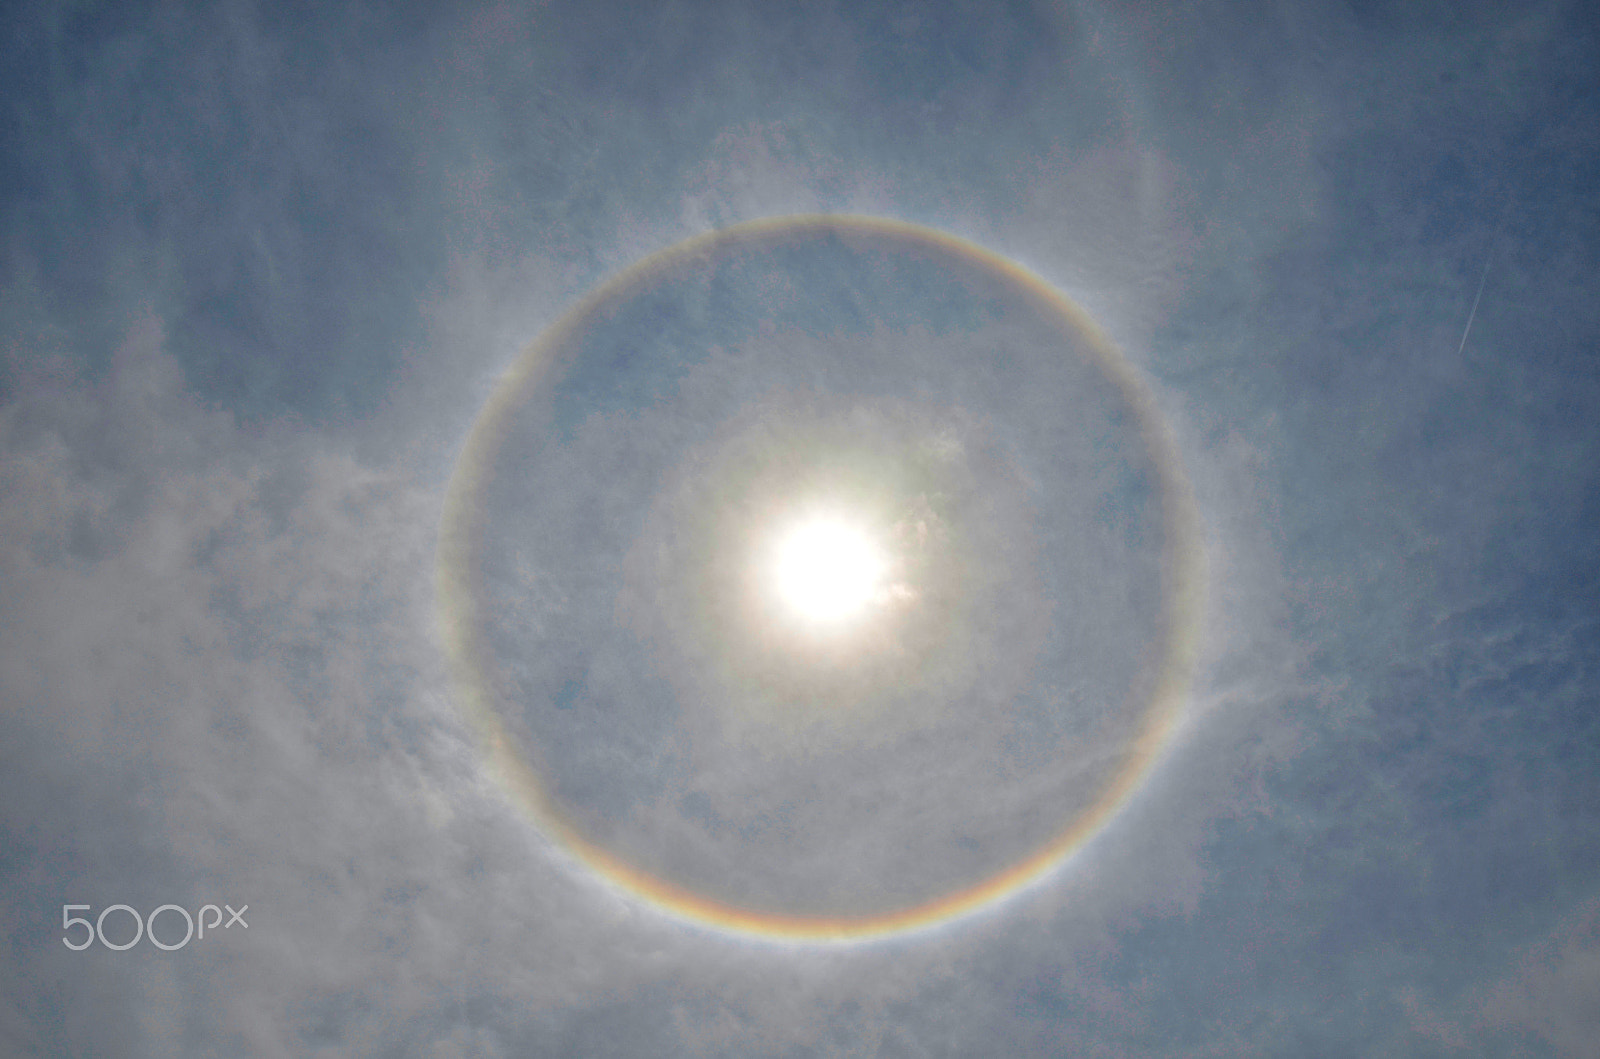 Nikon D5100 sample photo. Full circle rainbow around sun at noon, sun halo photography